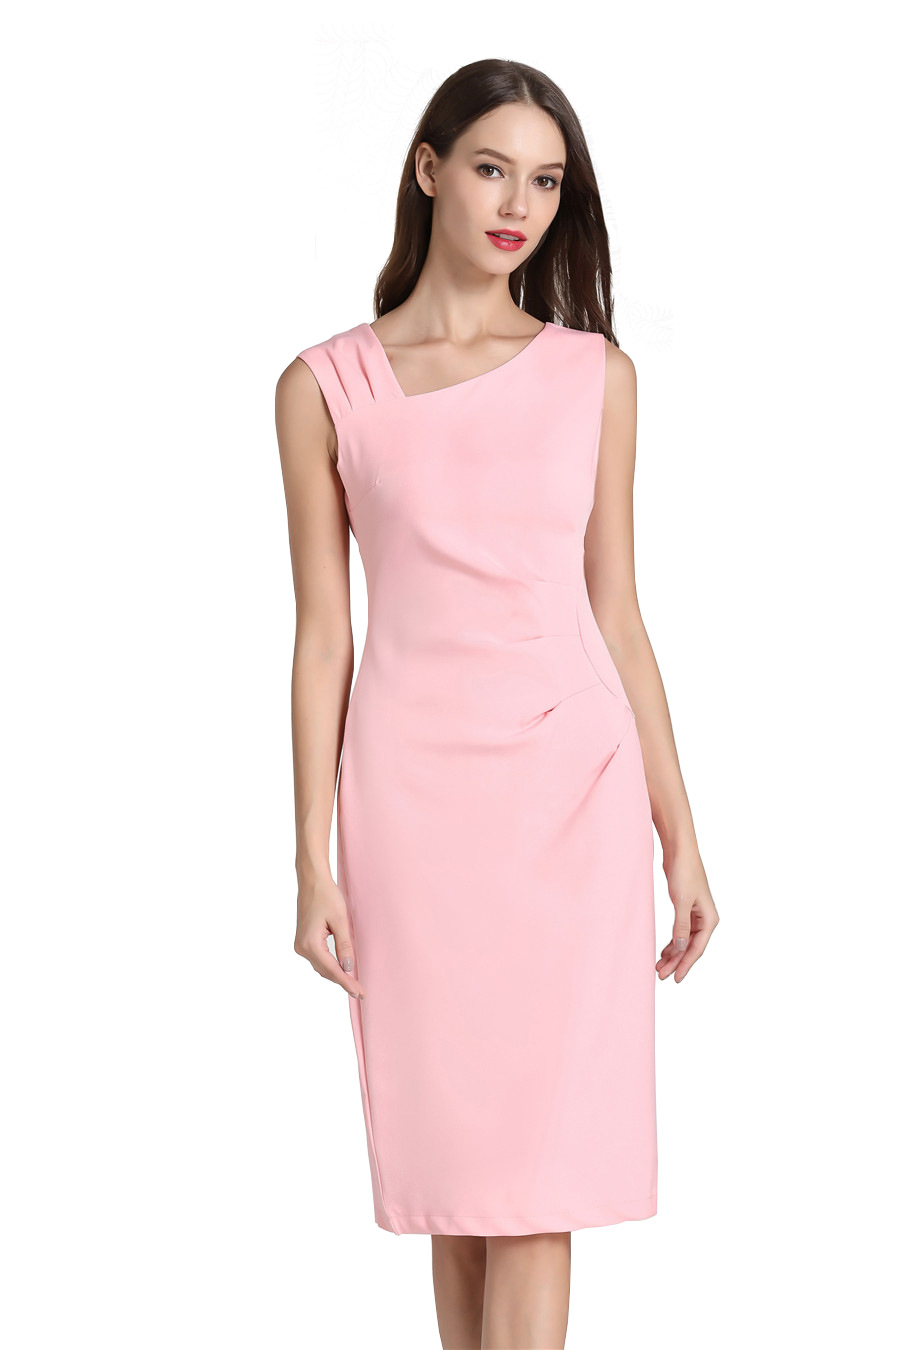 pink business dress